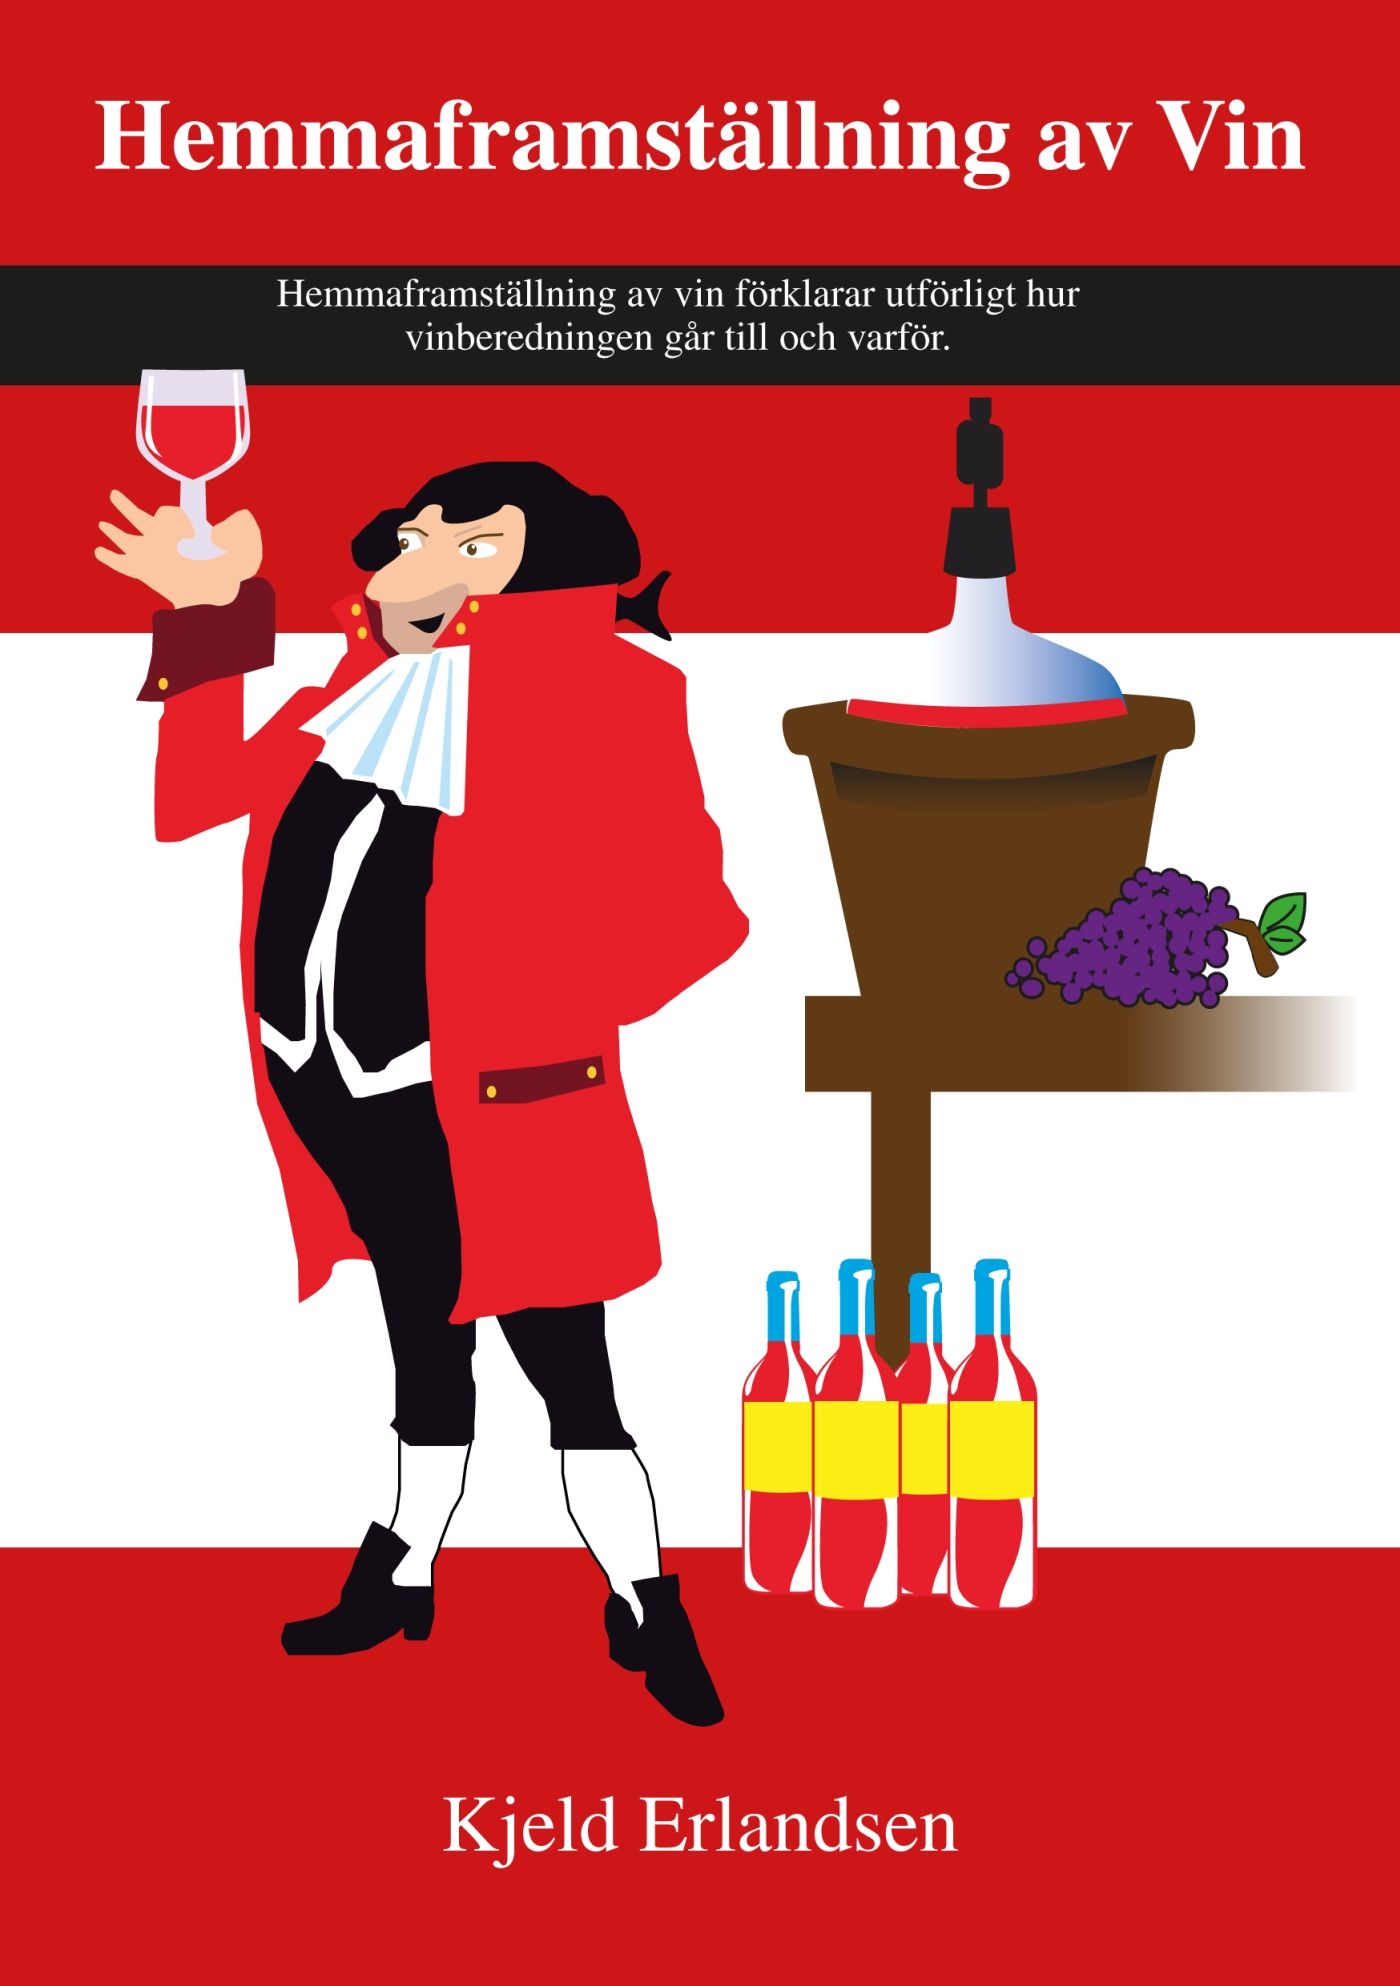 Hemmaframställning av Vin, e-bog af Kjeld Erlandsen